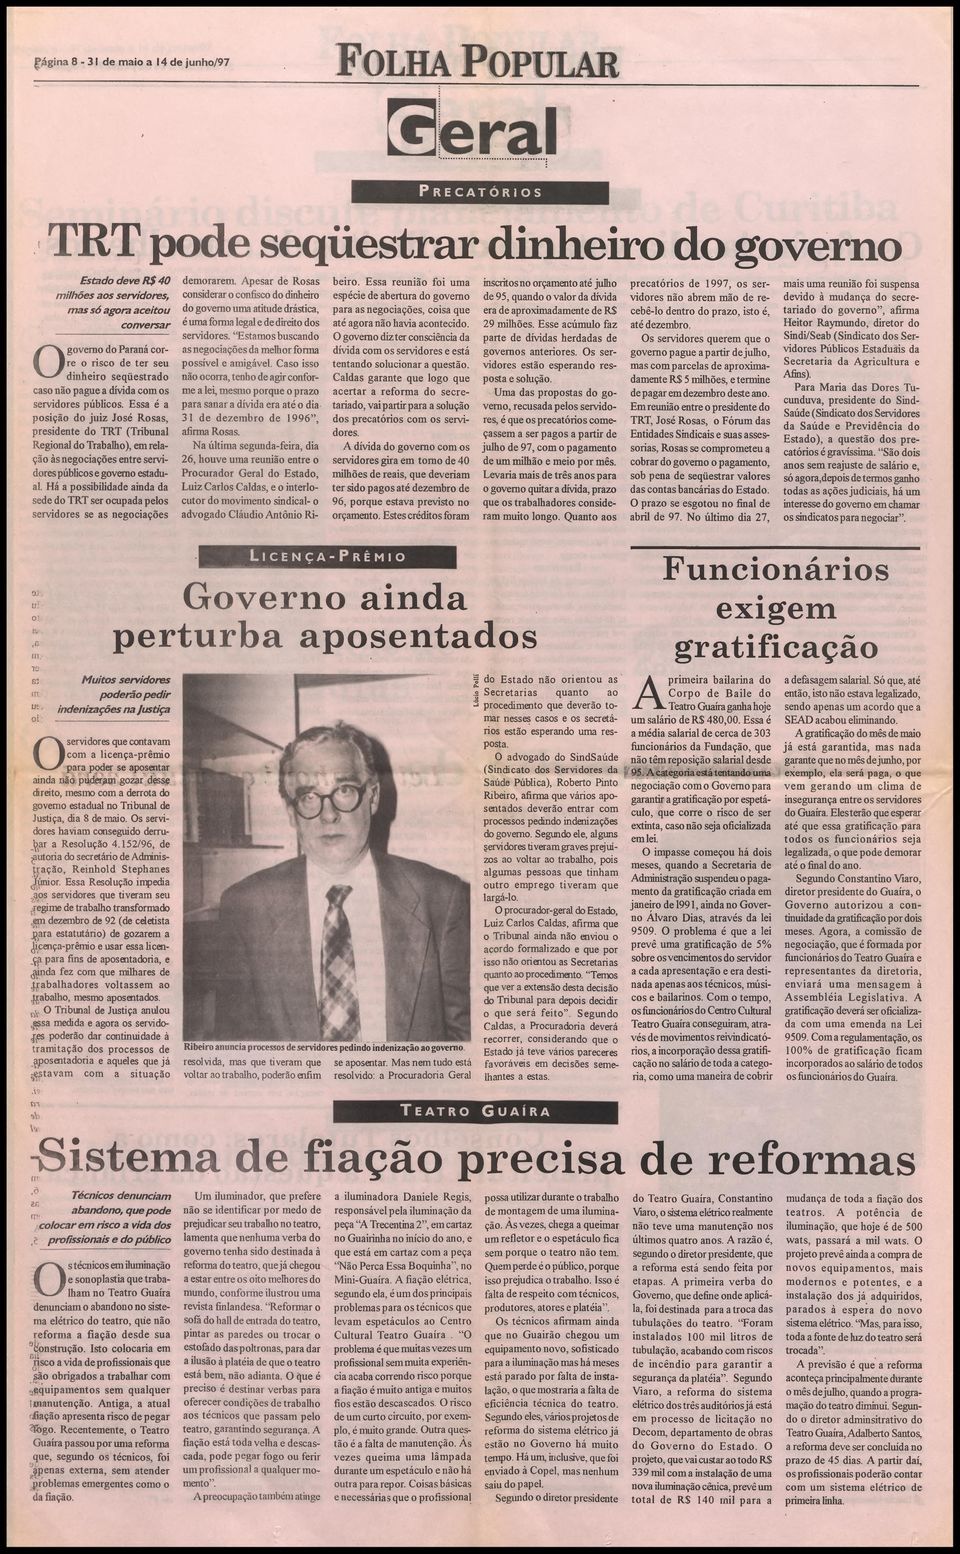 Essa é a posição do juiz José Rosas, presidente do TRT (Tribunal Regional do Trabalho), em relação às negociações entre servidores públicos e governo estadual.